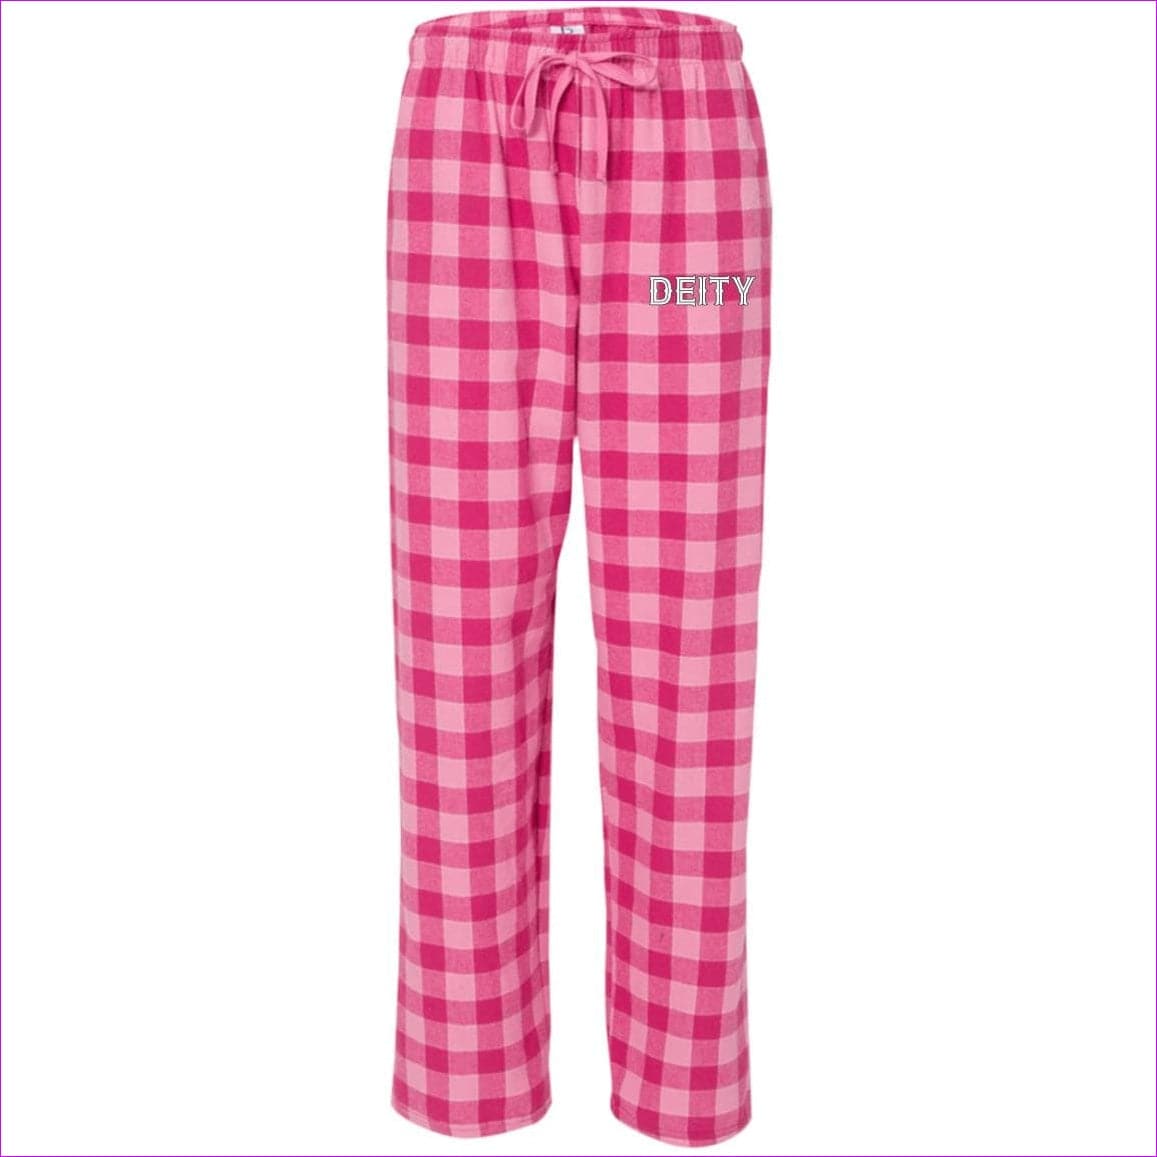 Bubblegum - Deity Flannel Pants - unisex pajamas Pants at TFC&H Co.